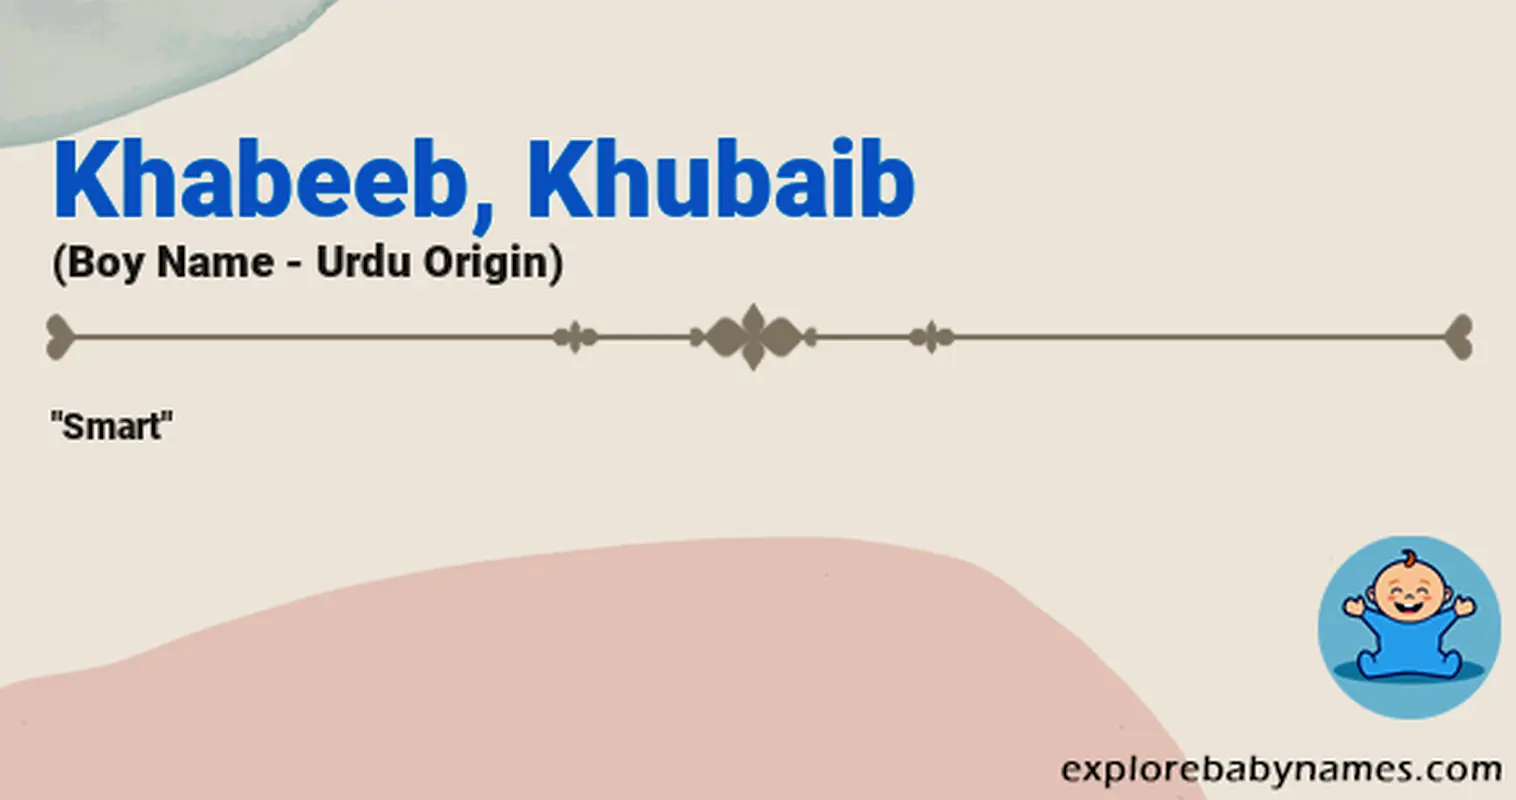 Meaning of Khabeeb, Khubaib